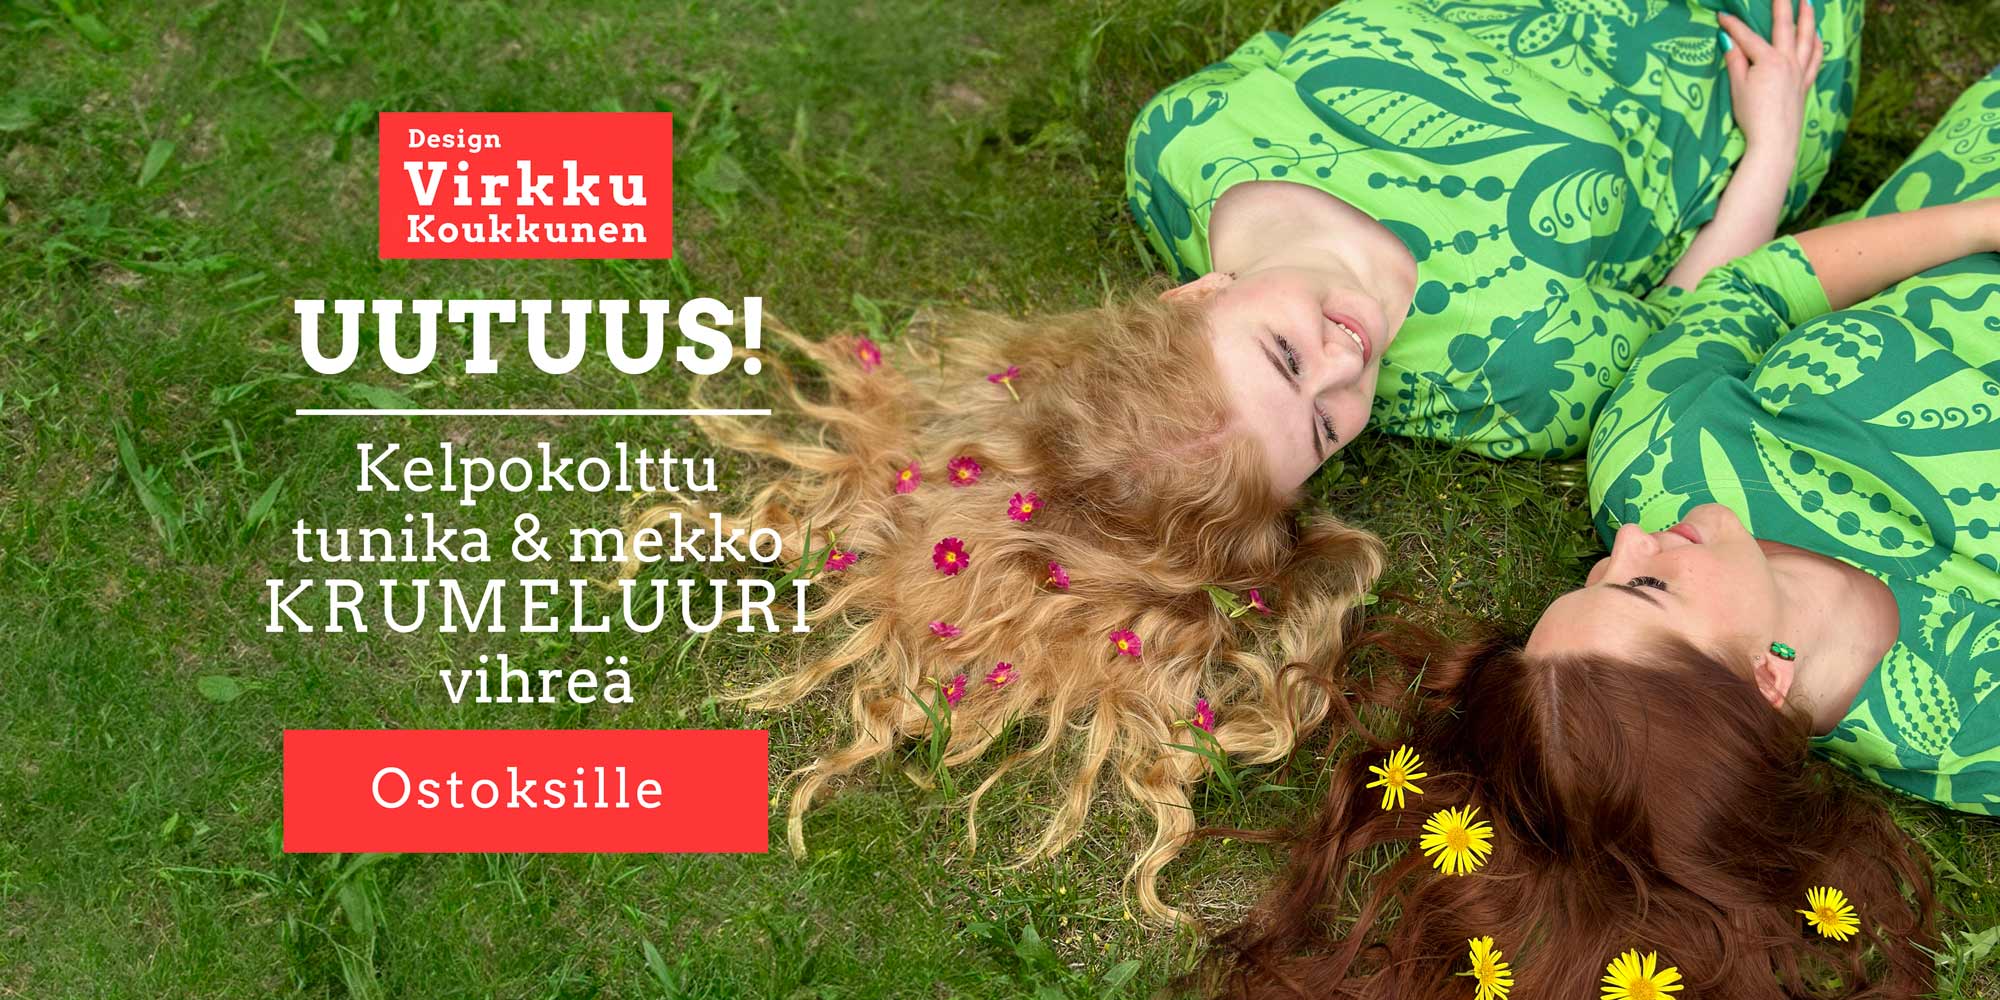 Virkkukoukkusen 3/4-hihainen laadukas Kelpokolttu tunika ja mekko. Ommeltu Suomessa todella miellyttävän tuntuisesta, pehmeästä ja ryhdikkäästä trikookankaamme. Krumeluuri kuosisessa trikoomekossa ja trikootunikassa on vihreällä pohjalla suuria kiemuraisia tummemmanvihreitä kuvioita - kiemuraisia kukkia, pilkkunauhoja, abstrakteja muotoja. Oikea vihreän rakastajan unelmavaate!